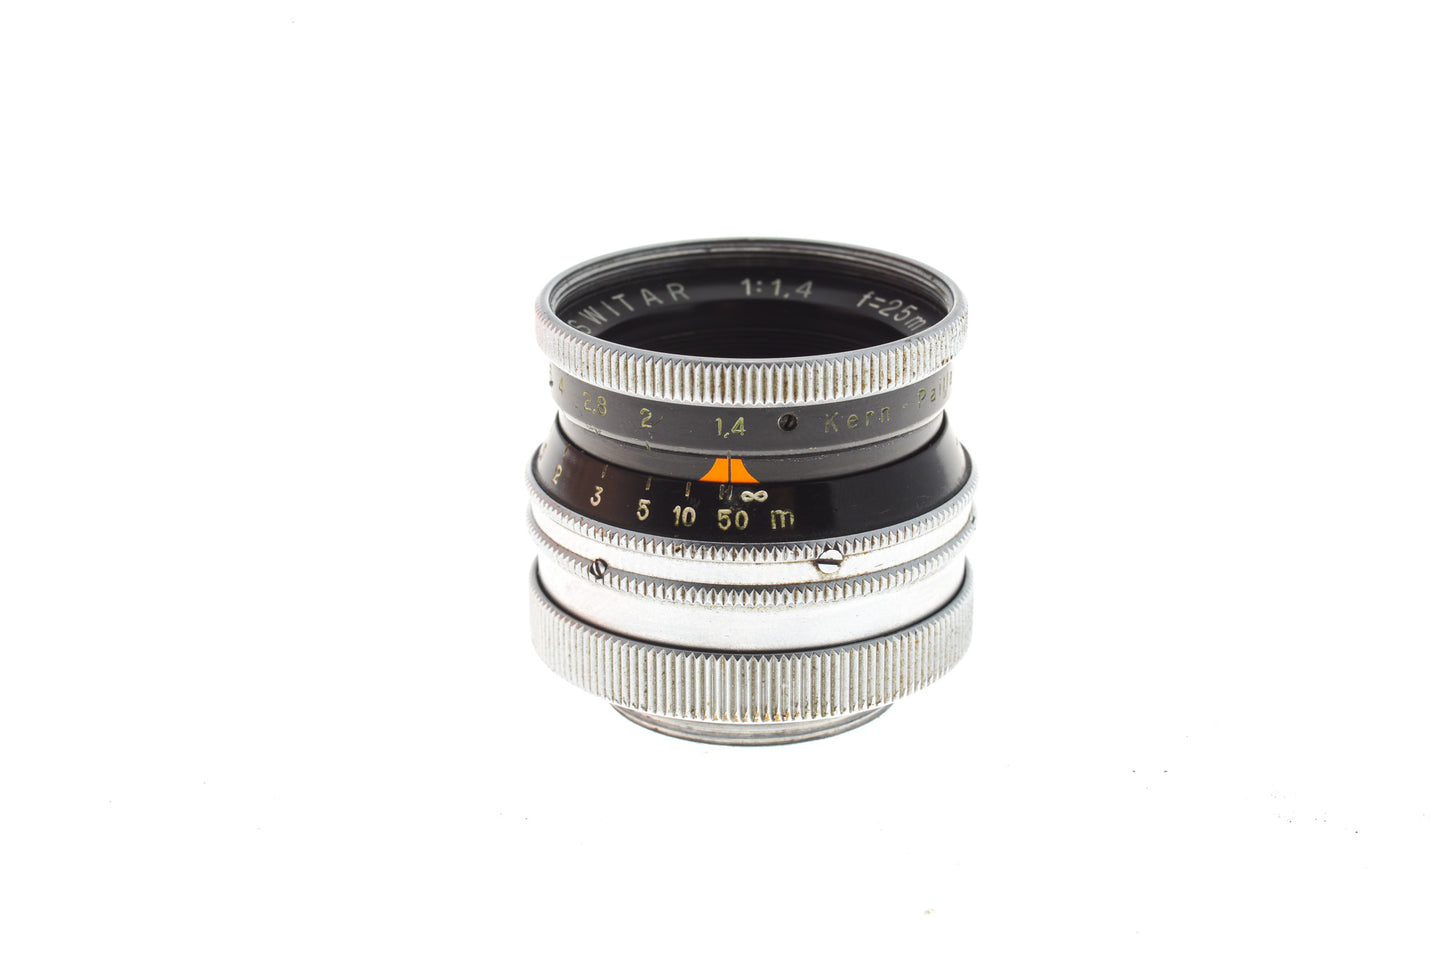 Kern-Paillard 25mm f1.4 Switar H16 RX - Lens